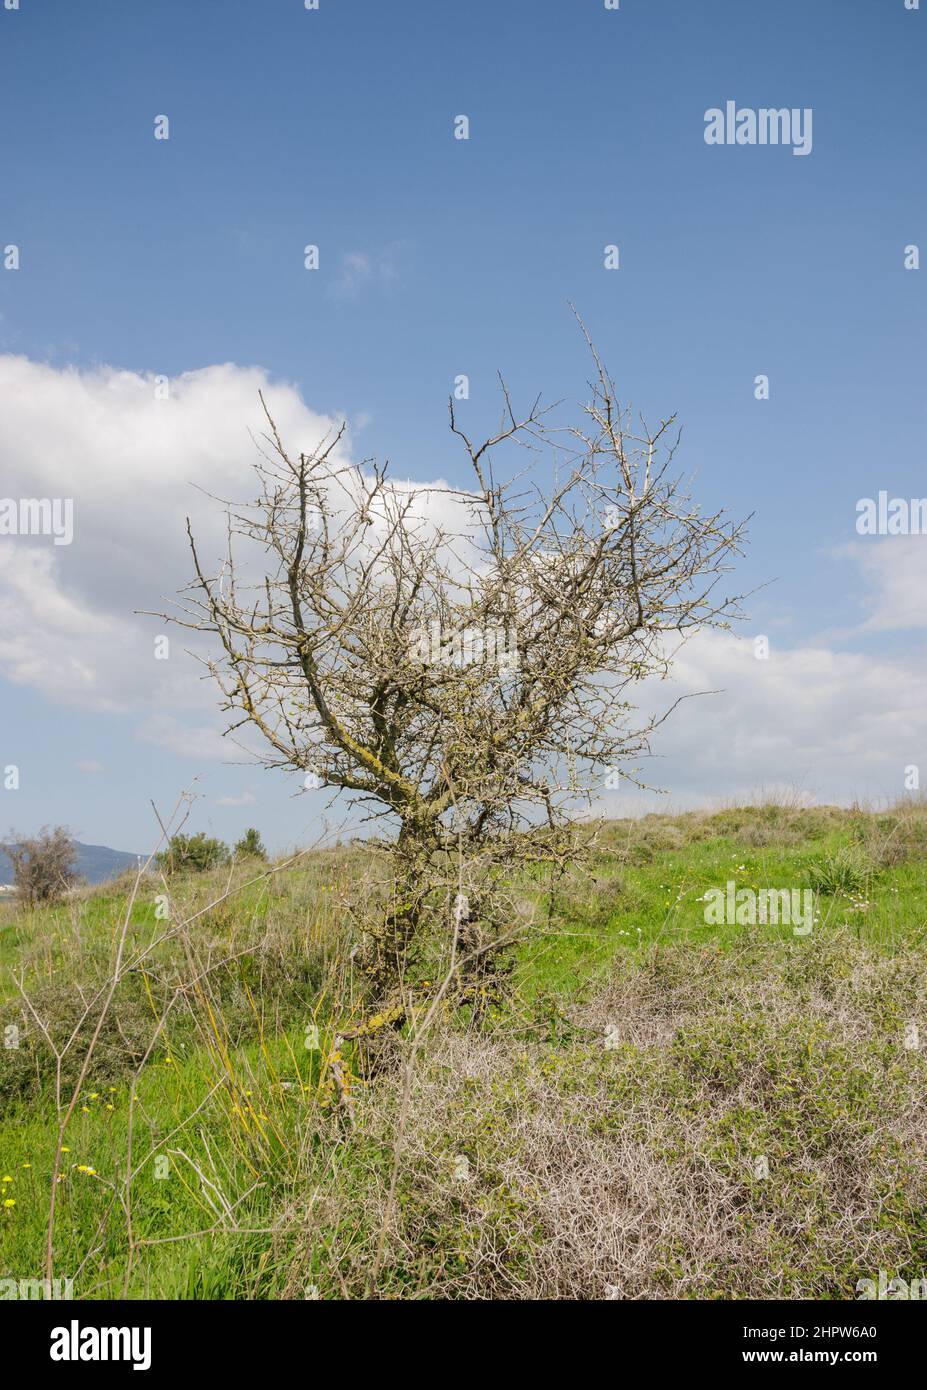 albero solitario asciutto su una collina verde Foto Stock